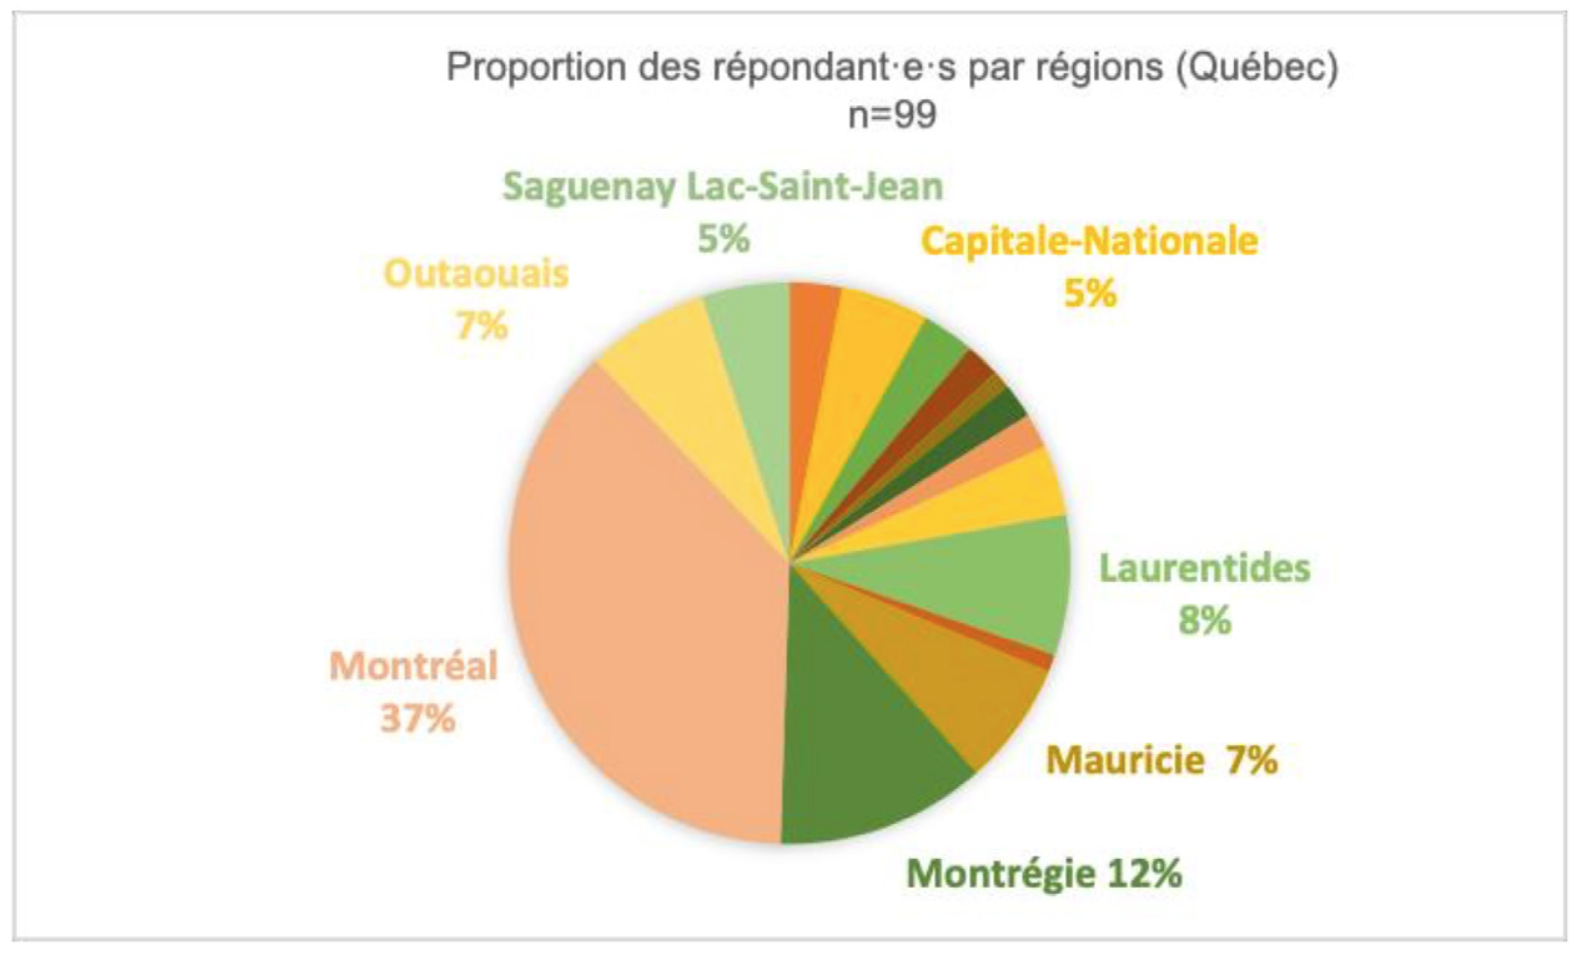 <strong>Figure 1. </strong>Proportion des répondants par régions (Québec n=99).